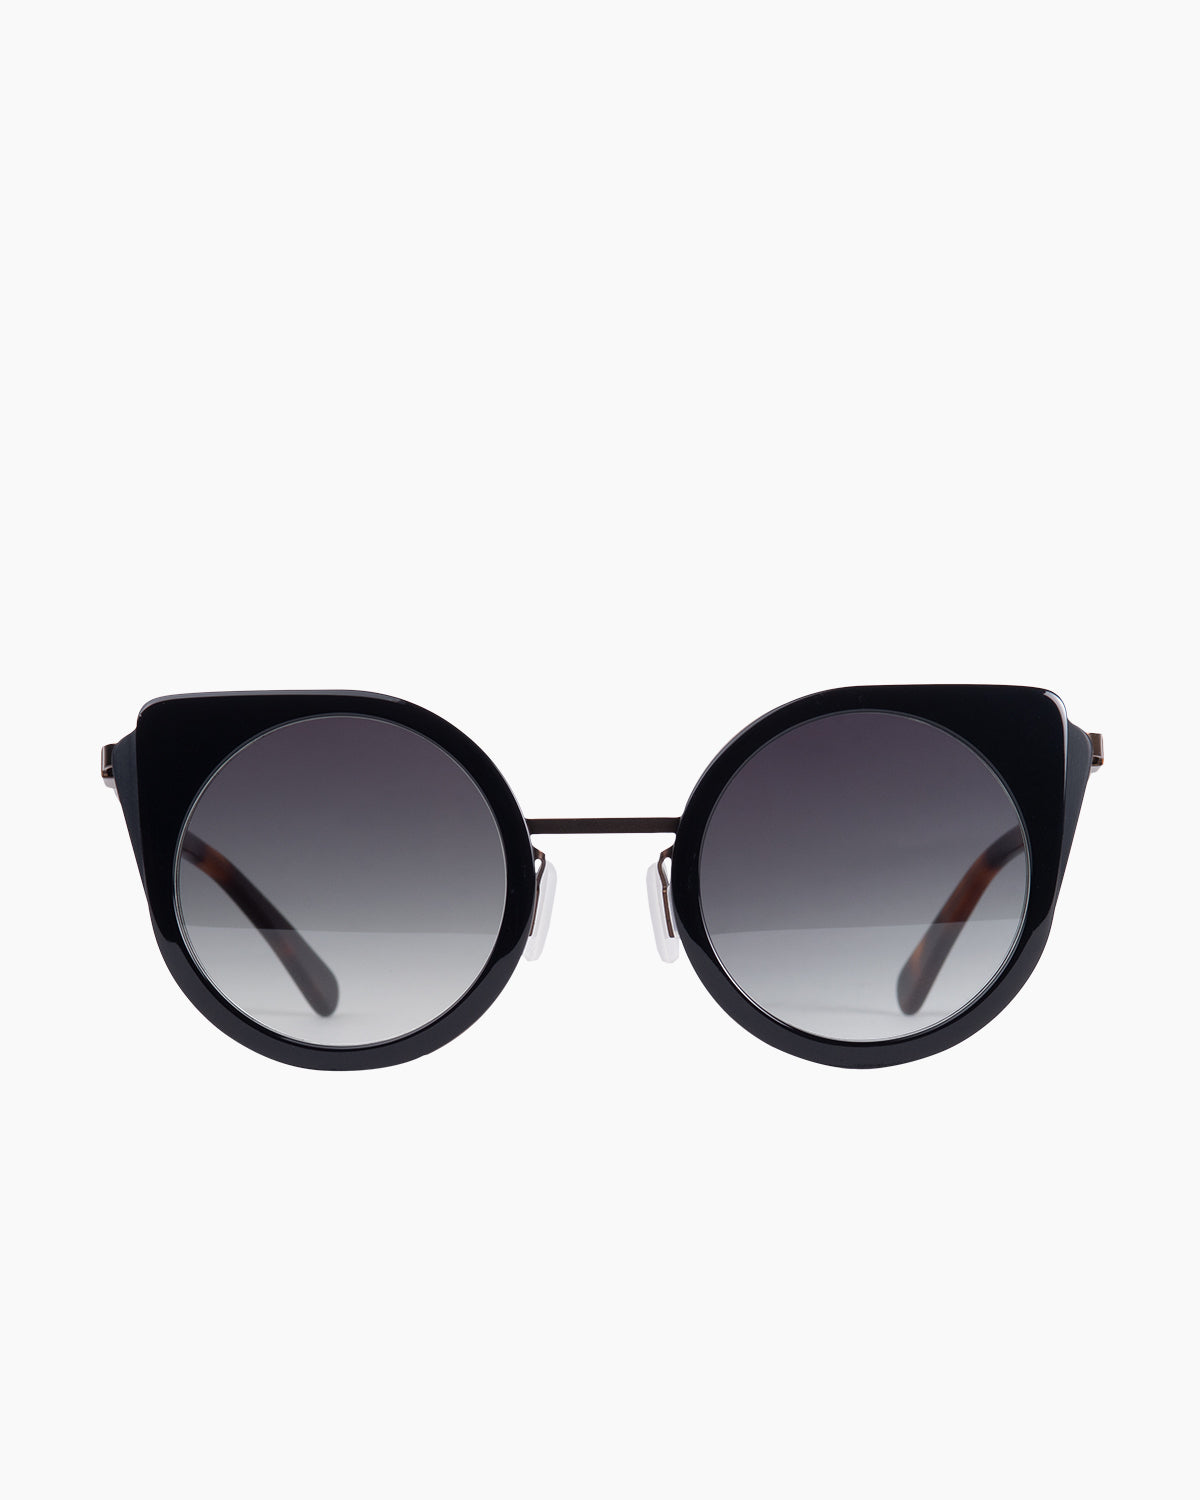 Gamine - CatS - Black/Copper | Bar à lunettes:  Marie-Sophie Dion